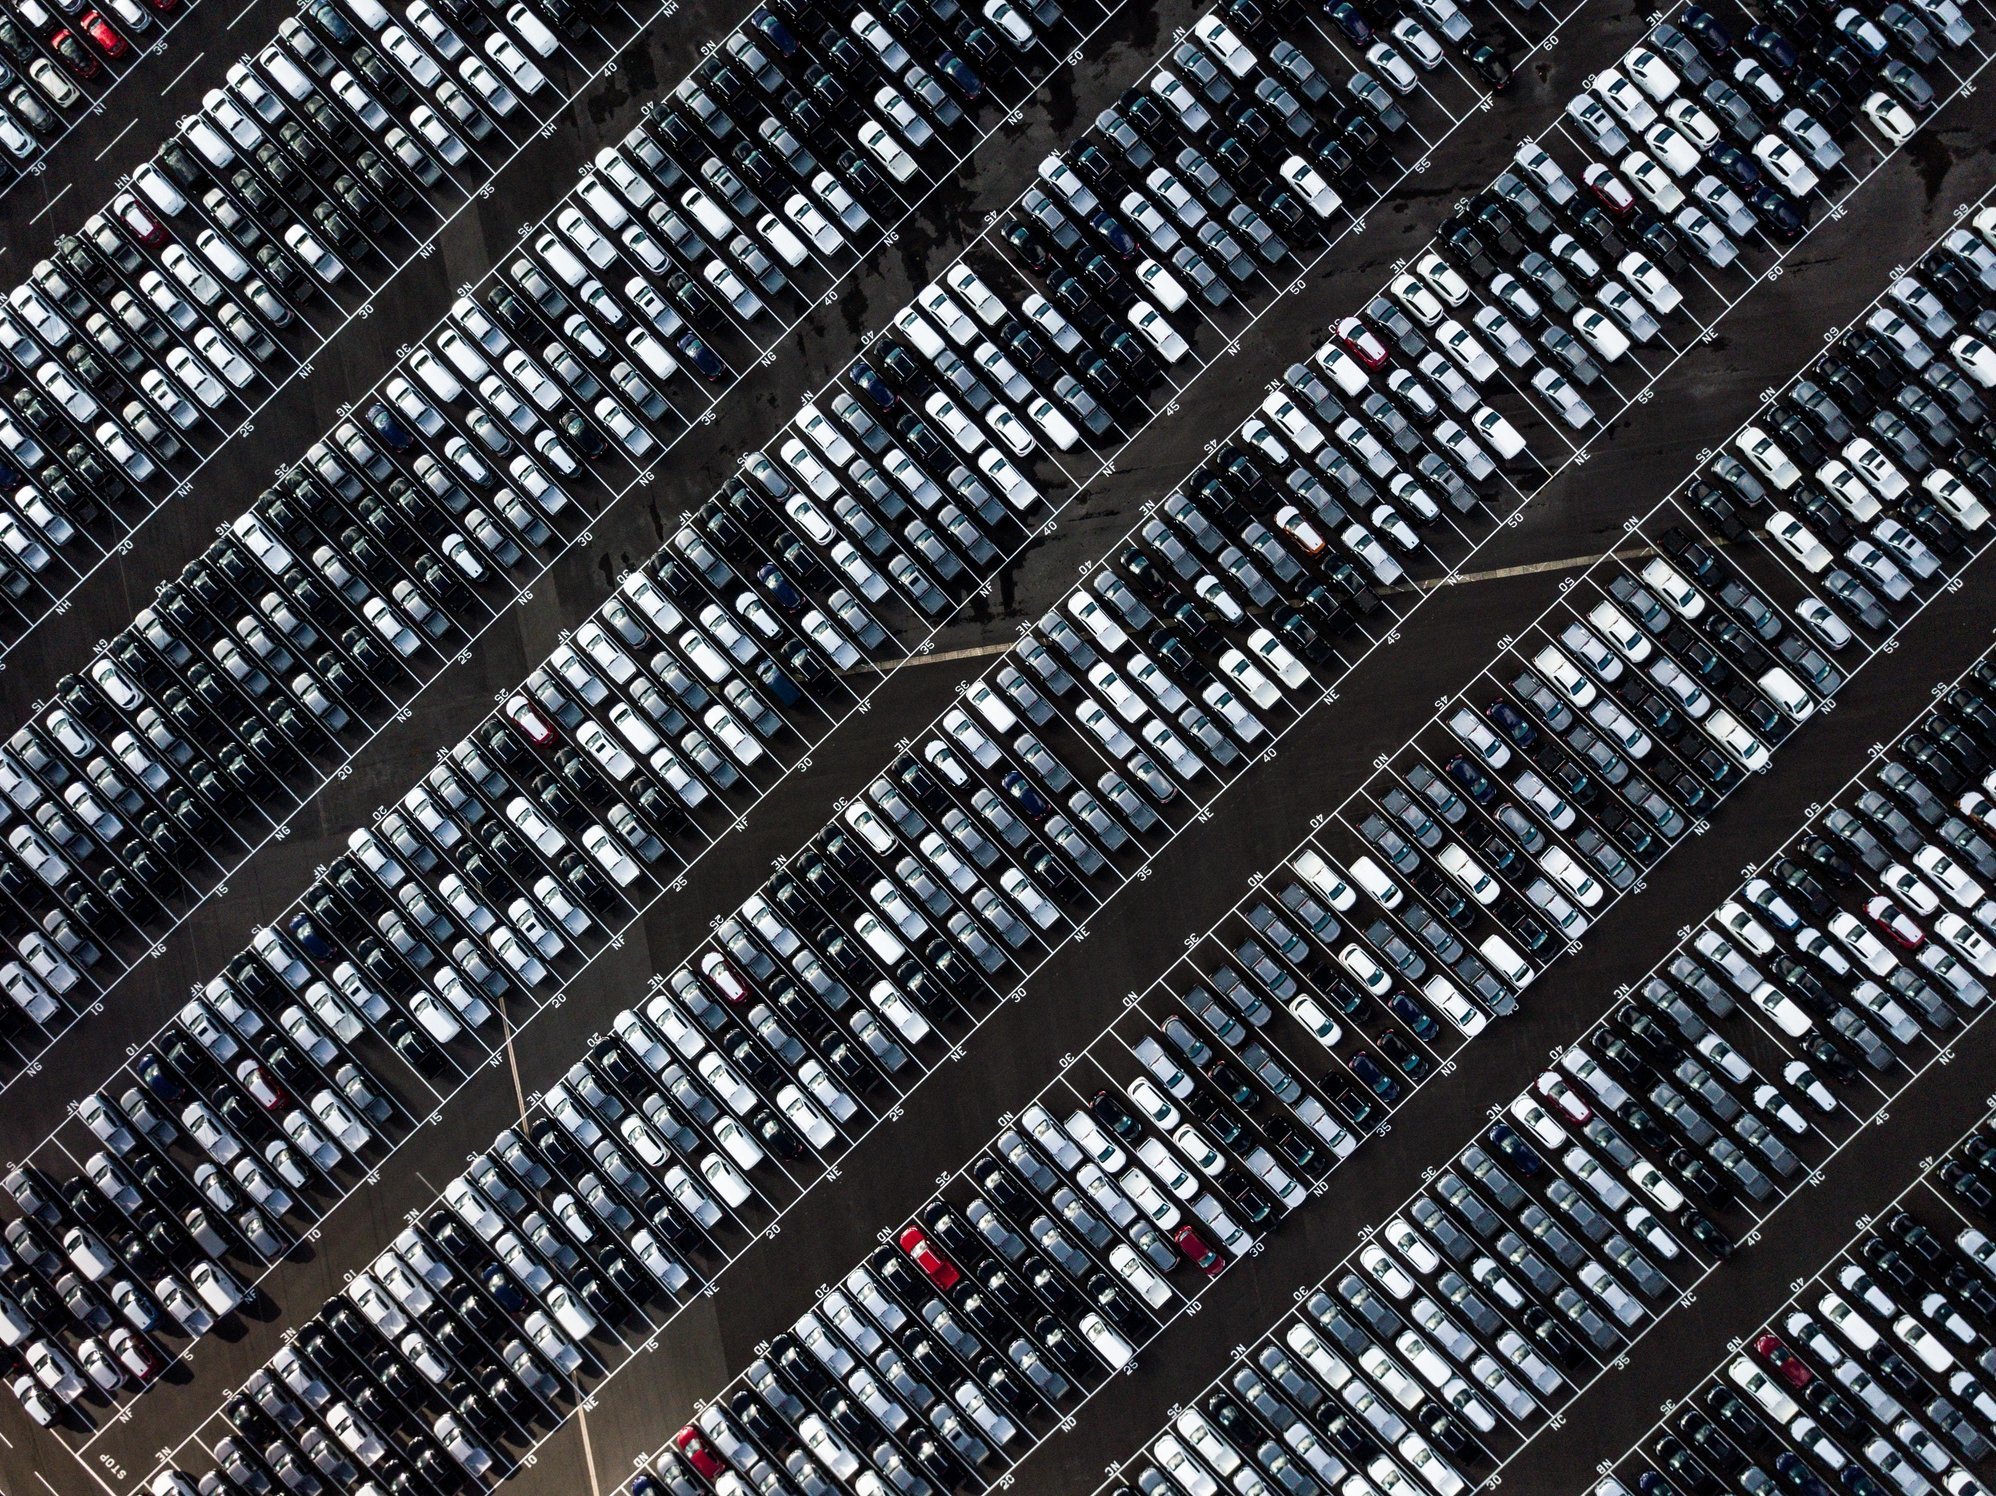 De verkoop van personenauto's in Europa is vorige maand gehalveerd ten opzichte van een jaar eerder